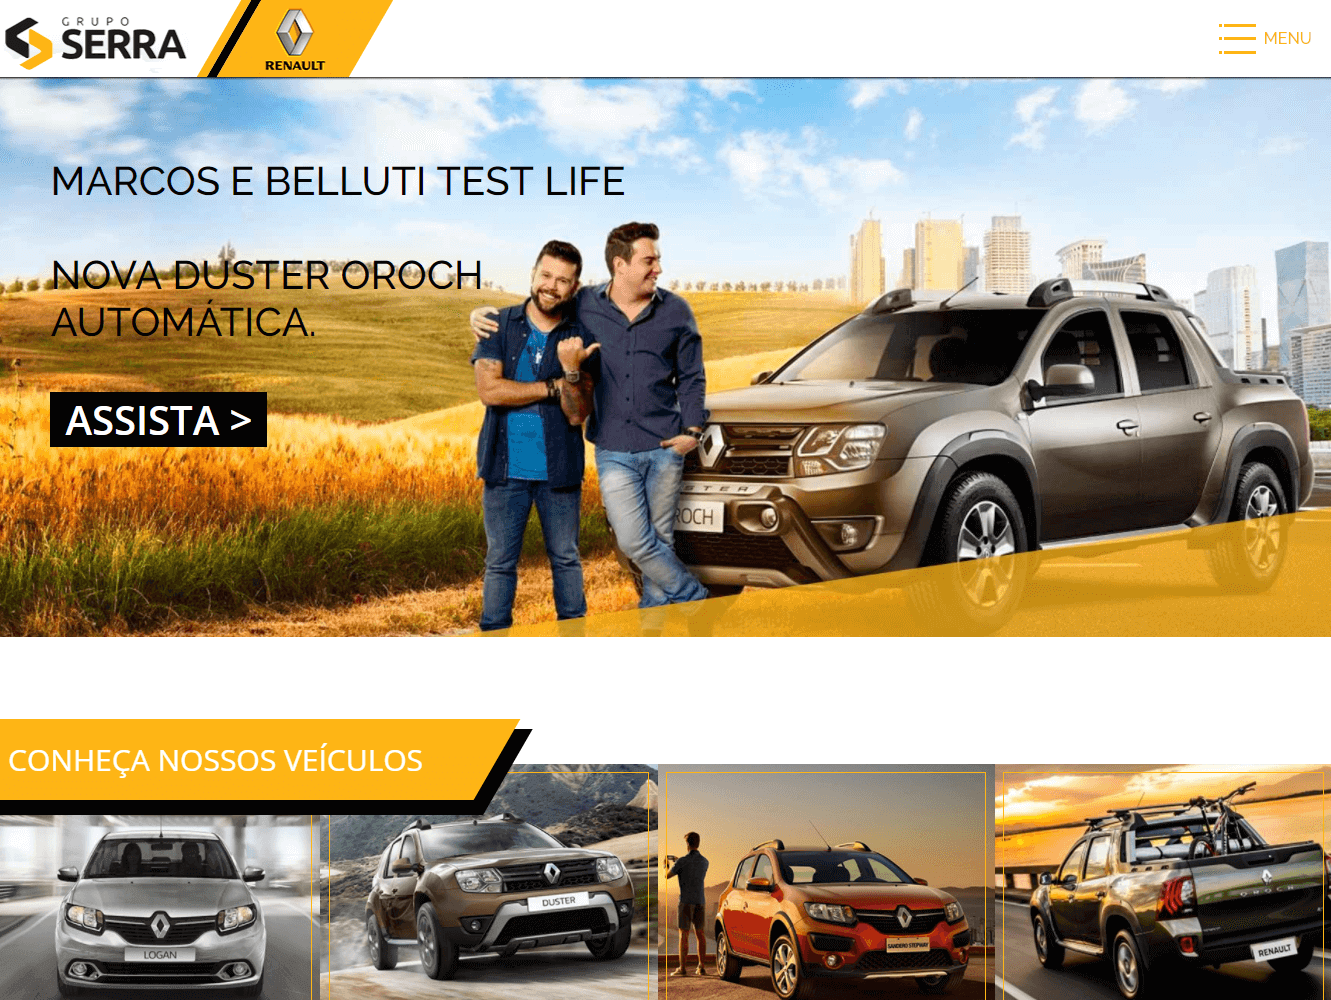 Portfolio example image - Site Renault Serra